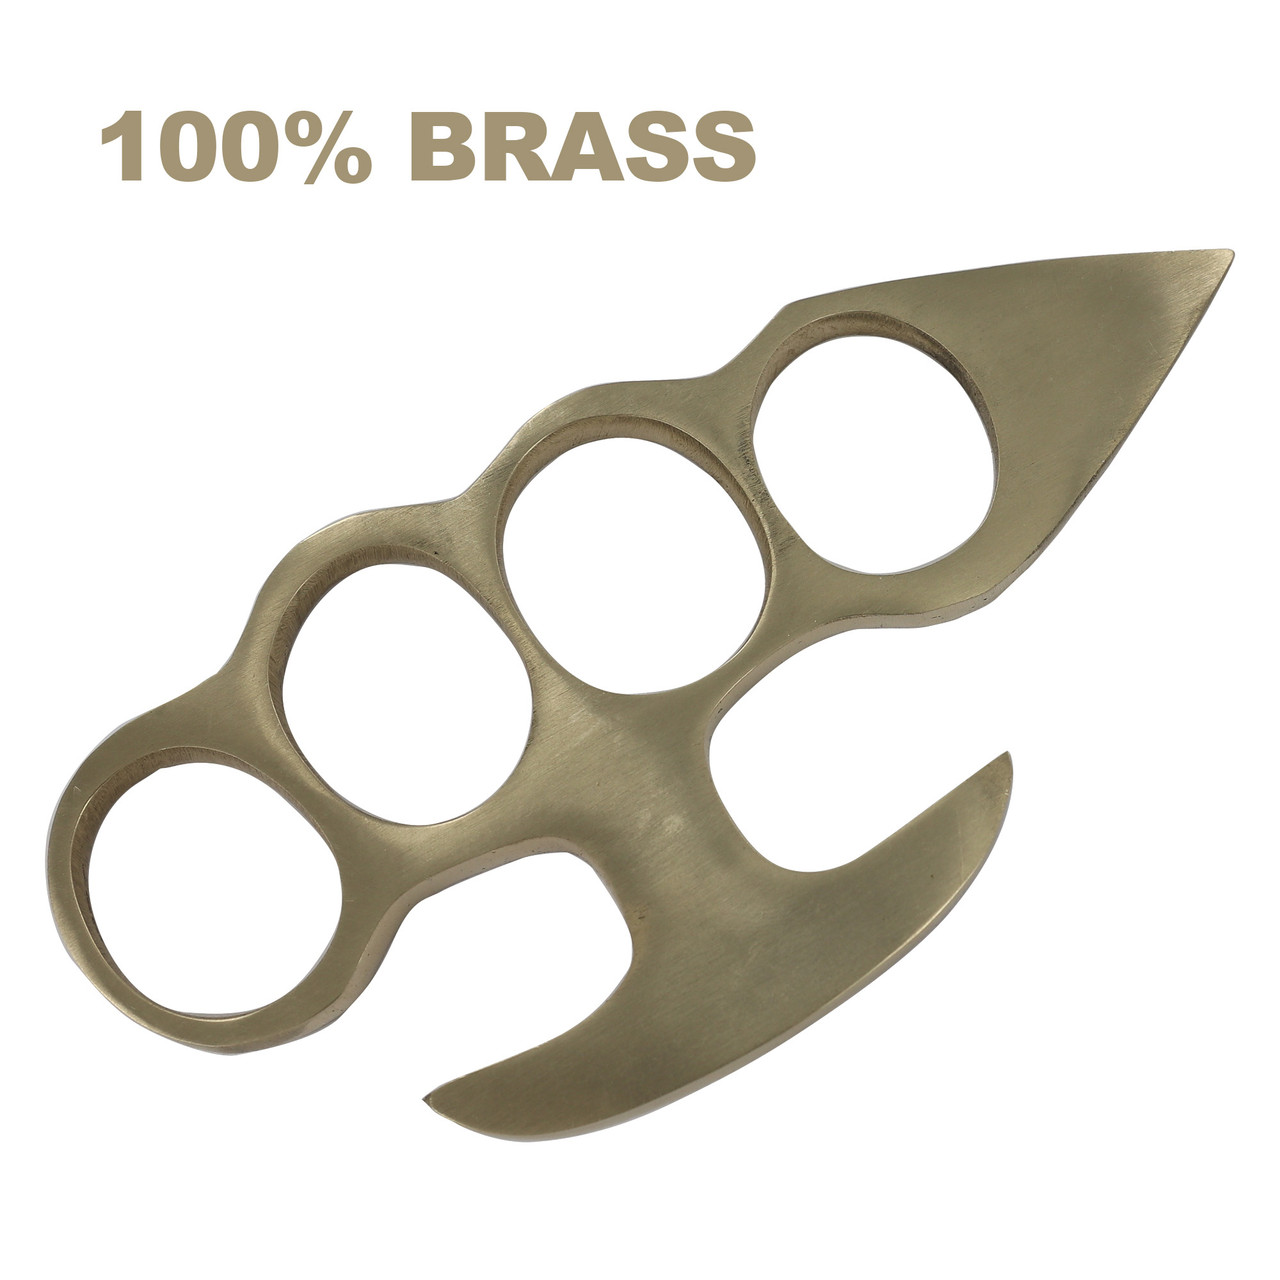 Top 5 Brass Knuckles Under $20 For Christmas Sale - SwordsSwords.com